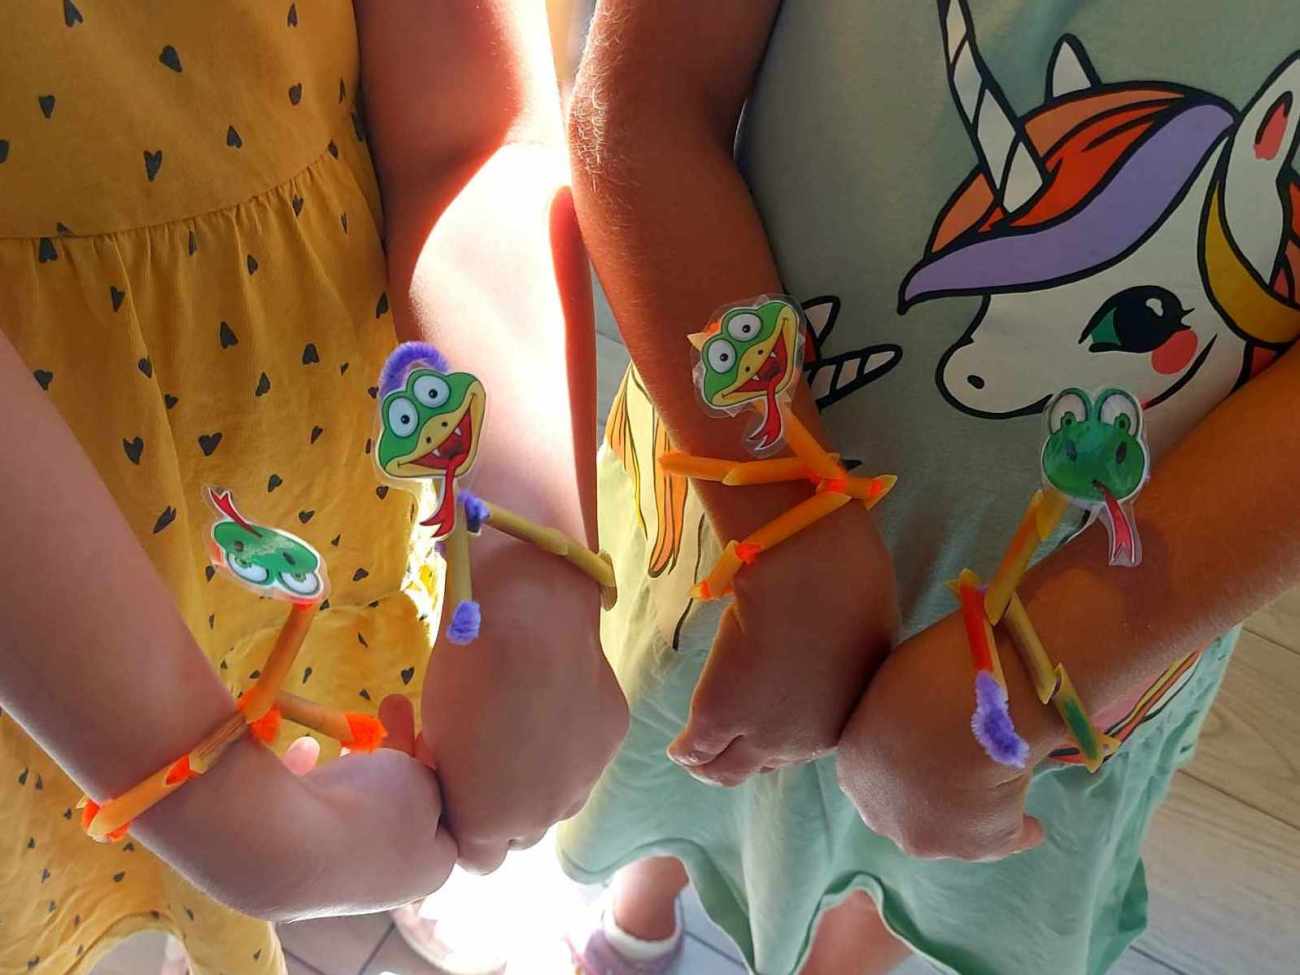 Dziewczynki prezentują bransoletki z wężami na rękach.